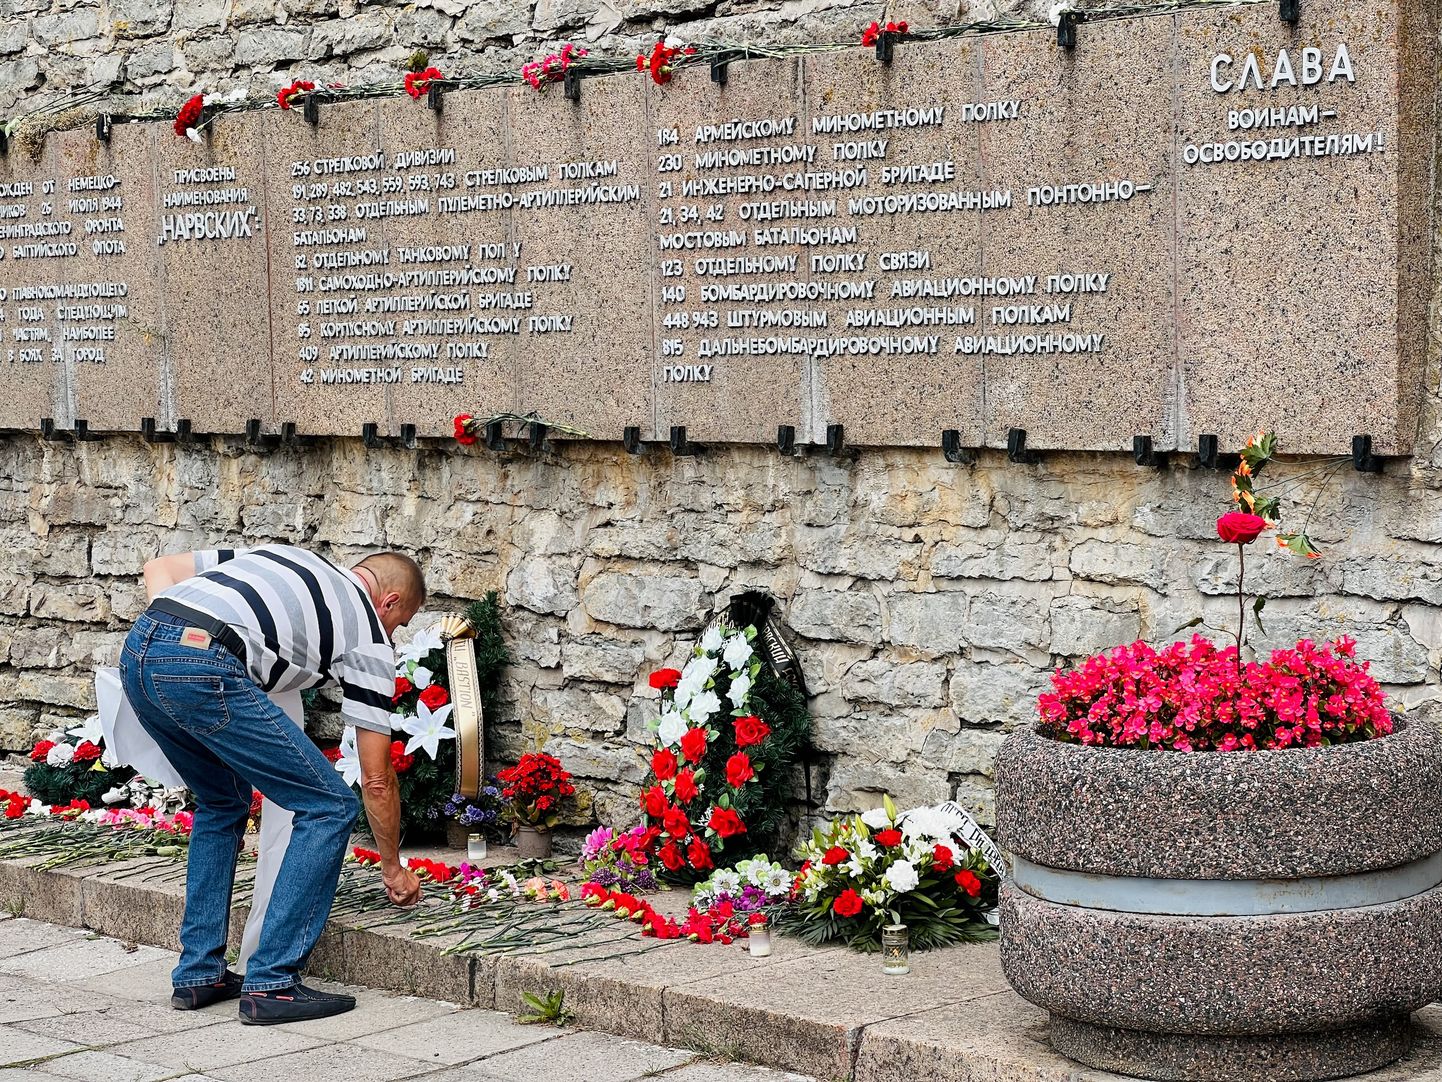 Во вторник, 26 июля, жители Нарвы, в целом соблюдая закон и требования полиции, отметили годовщину так называемого освобождения города Красной армией в 1944 году.